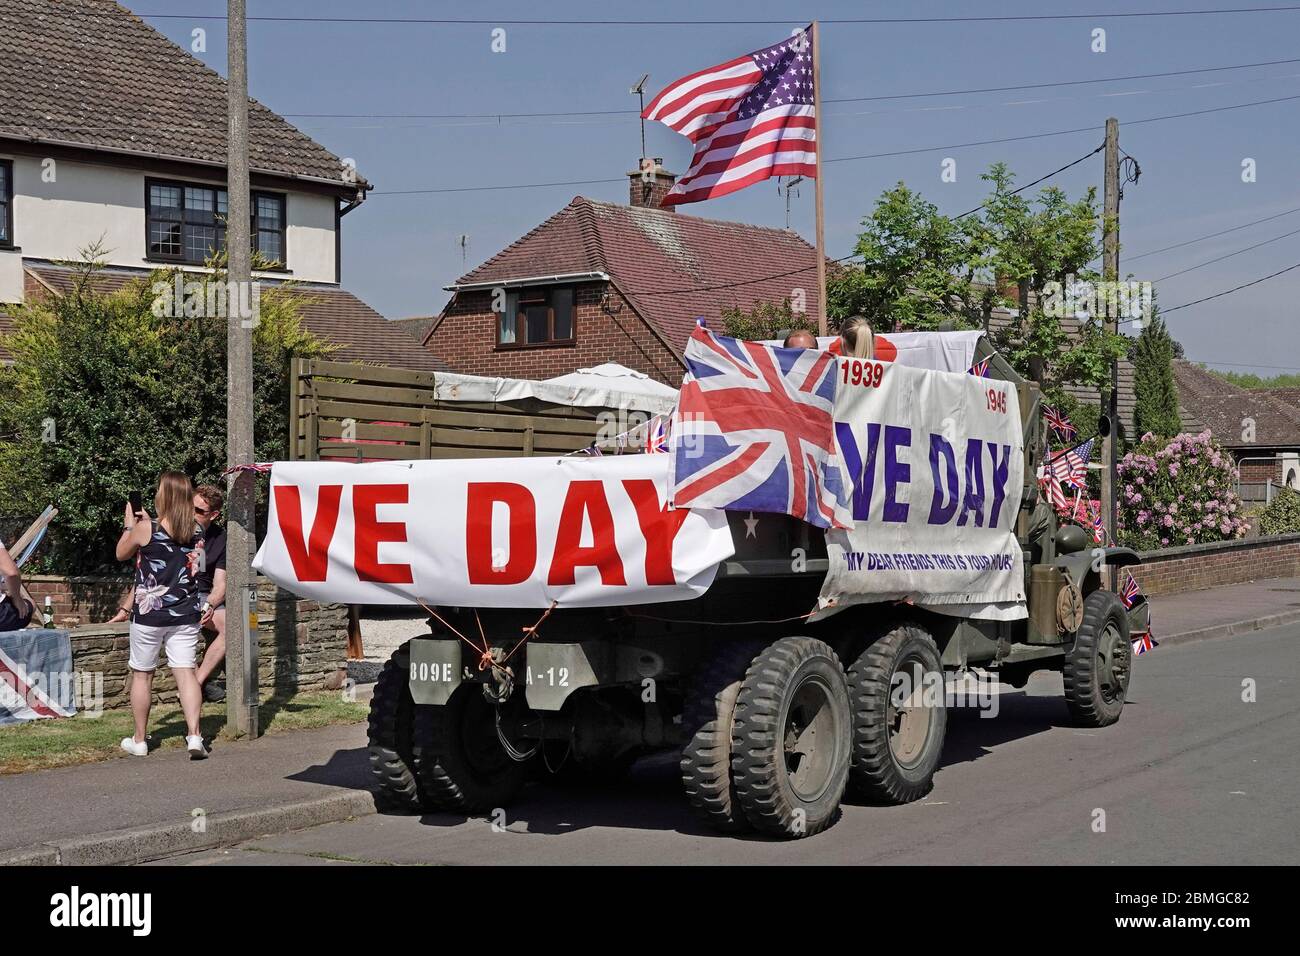 USA erhalten Militär LKW dekoriert VE Tag Union Jack & American Stars & Stripes Flagge Aufruf an 2020 Straße Feiern Parteien Essex England UK Stockfoto